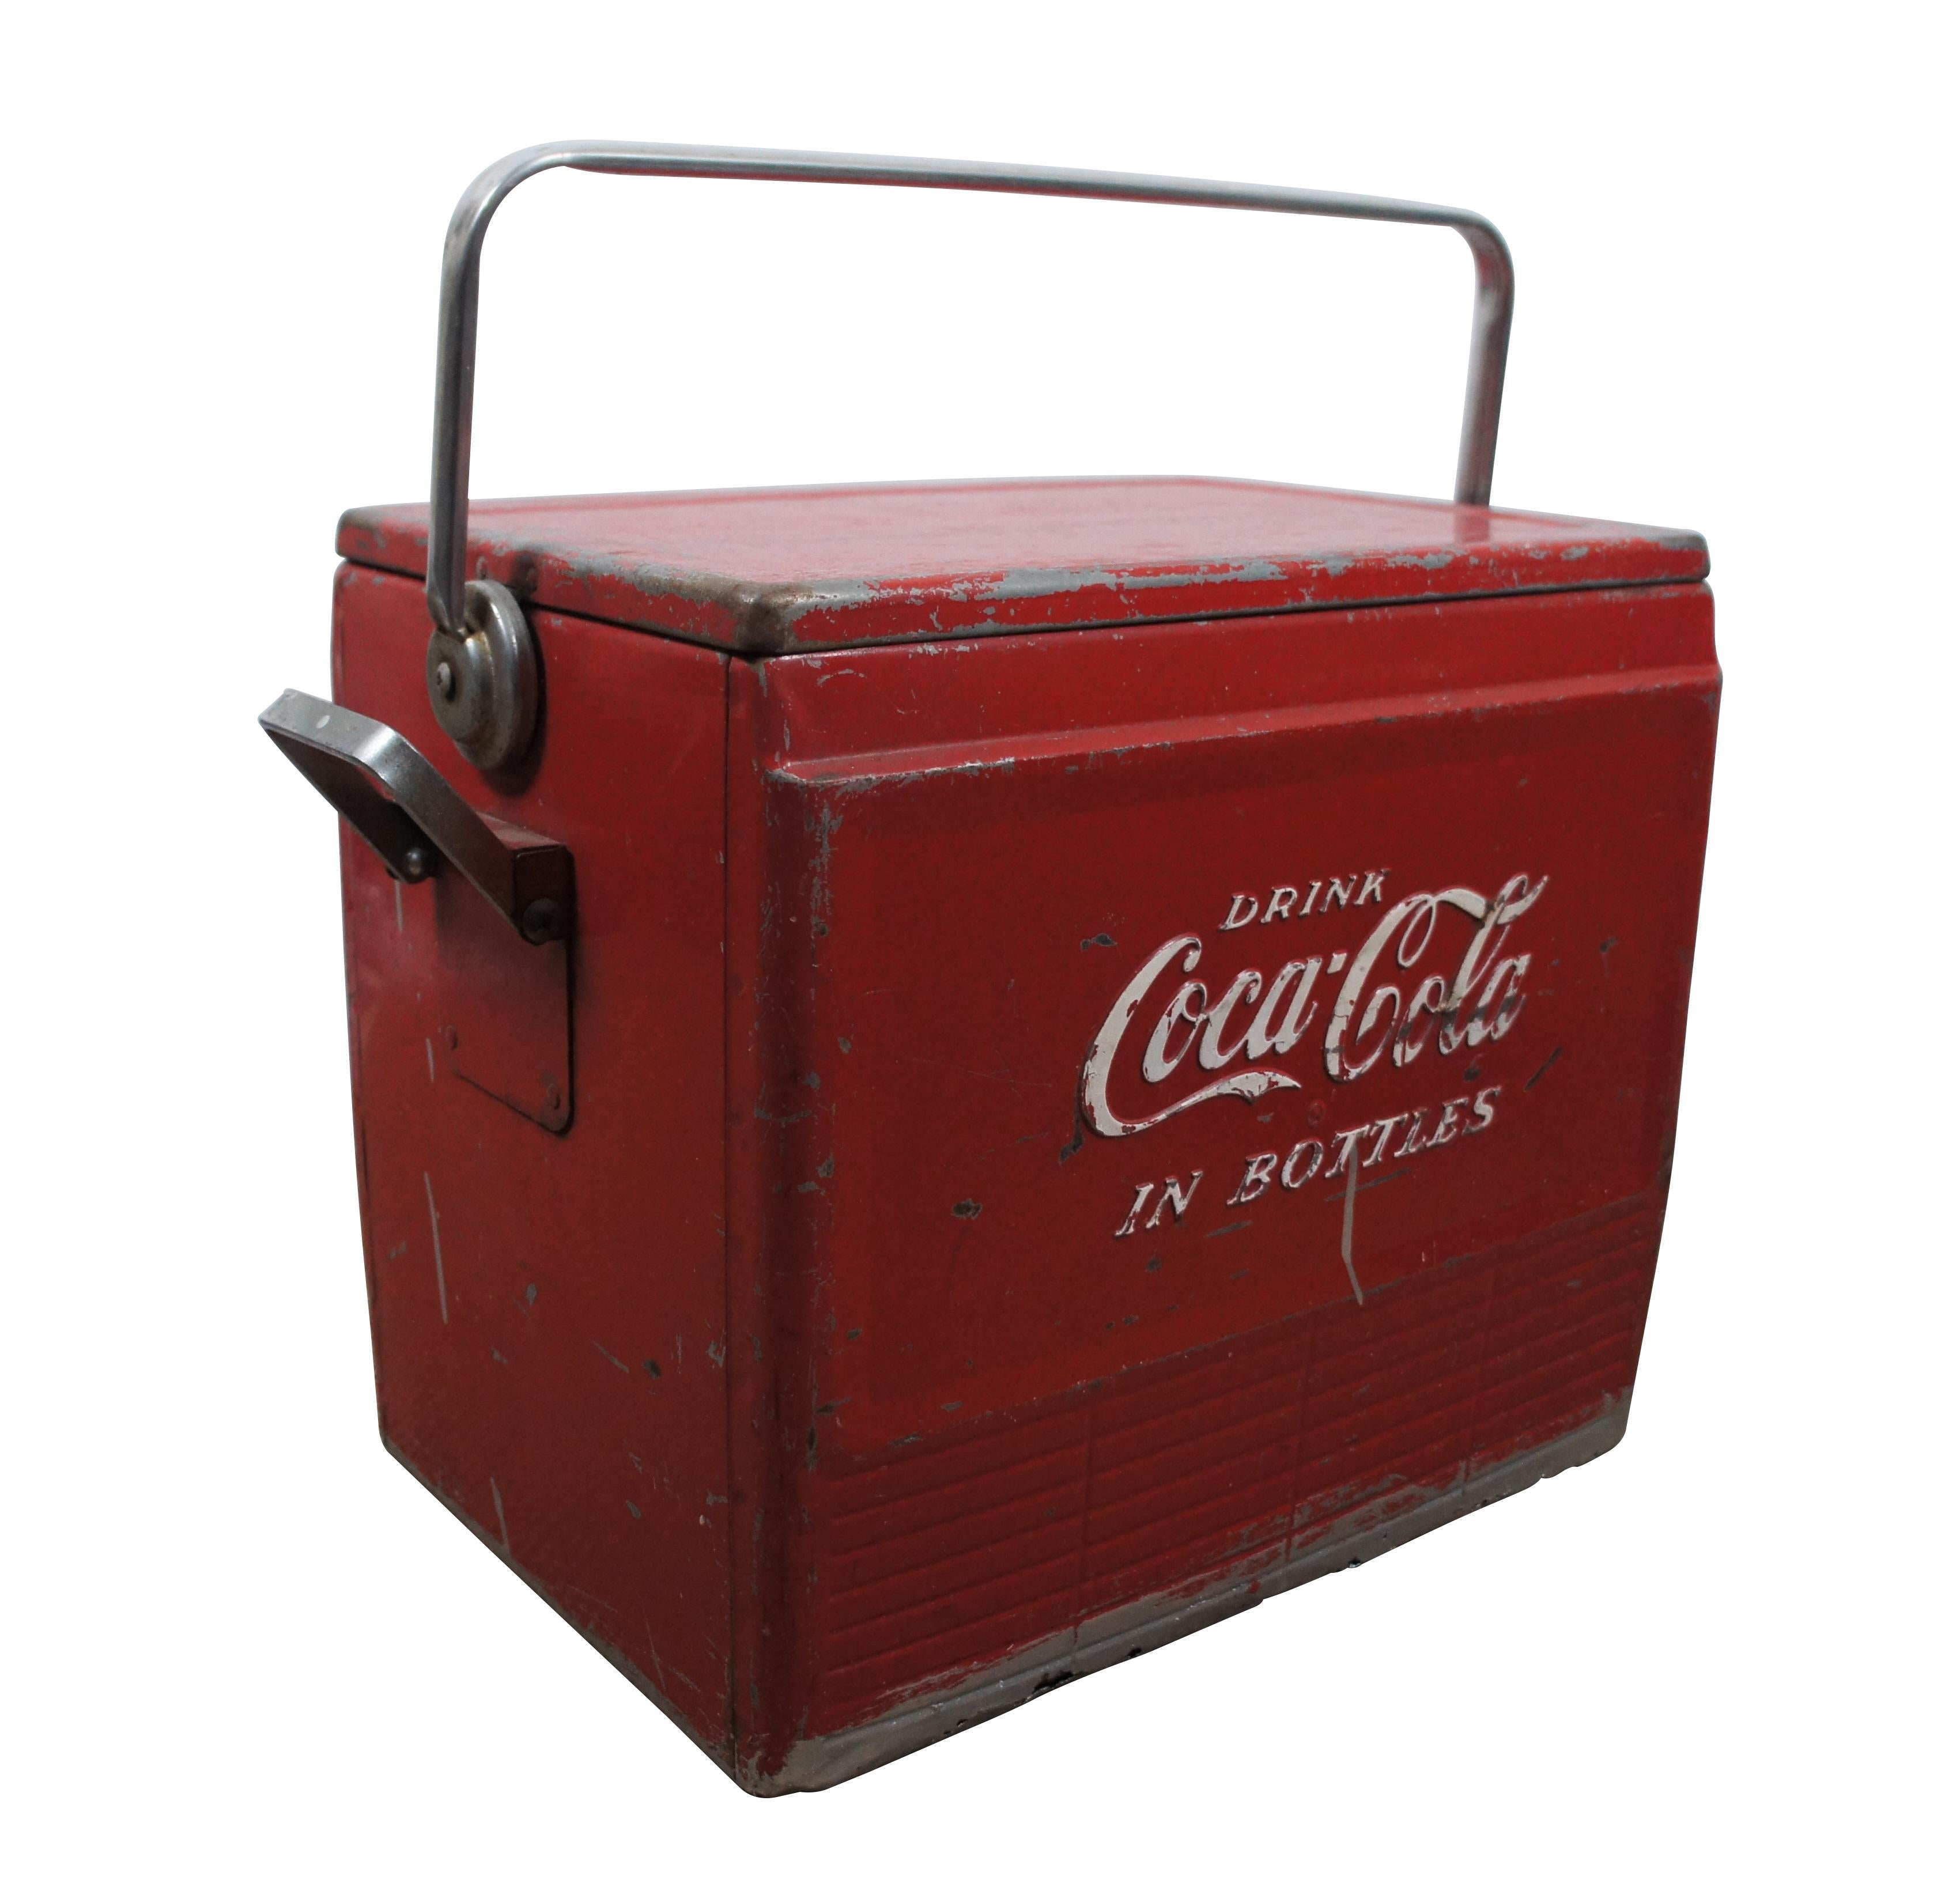 Glacière à boissons en métal rouge Coca Cola des années 1950, avec plateau, drain et décapsuleur.  Boire du Coca Cola en bouteille.

Dimensions :
20